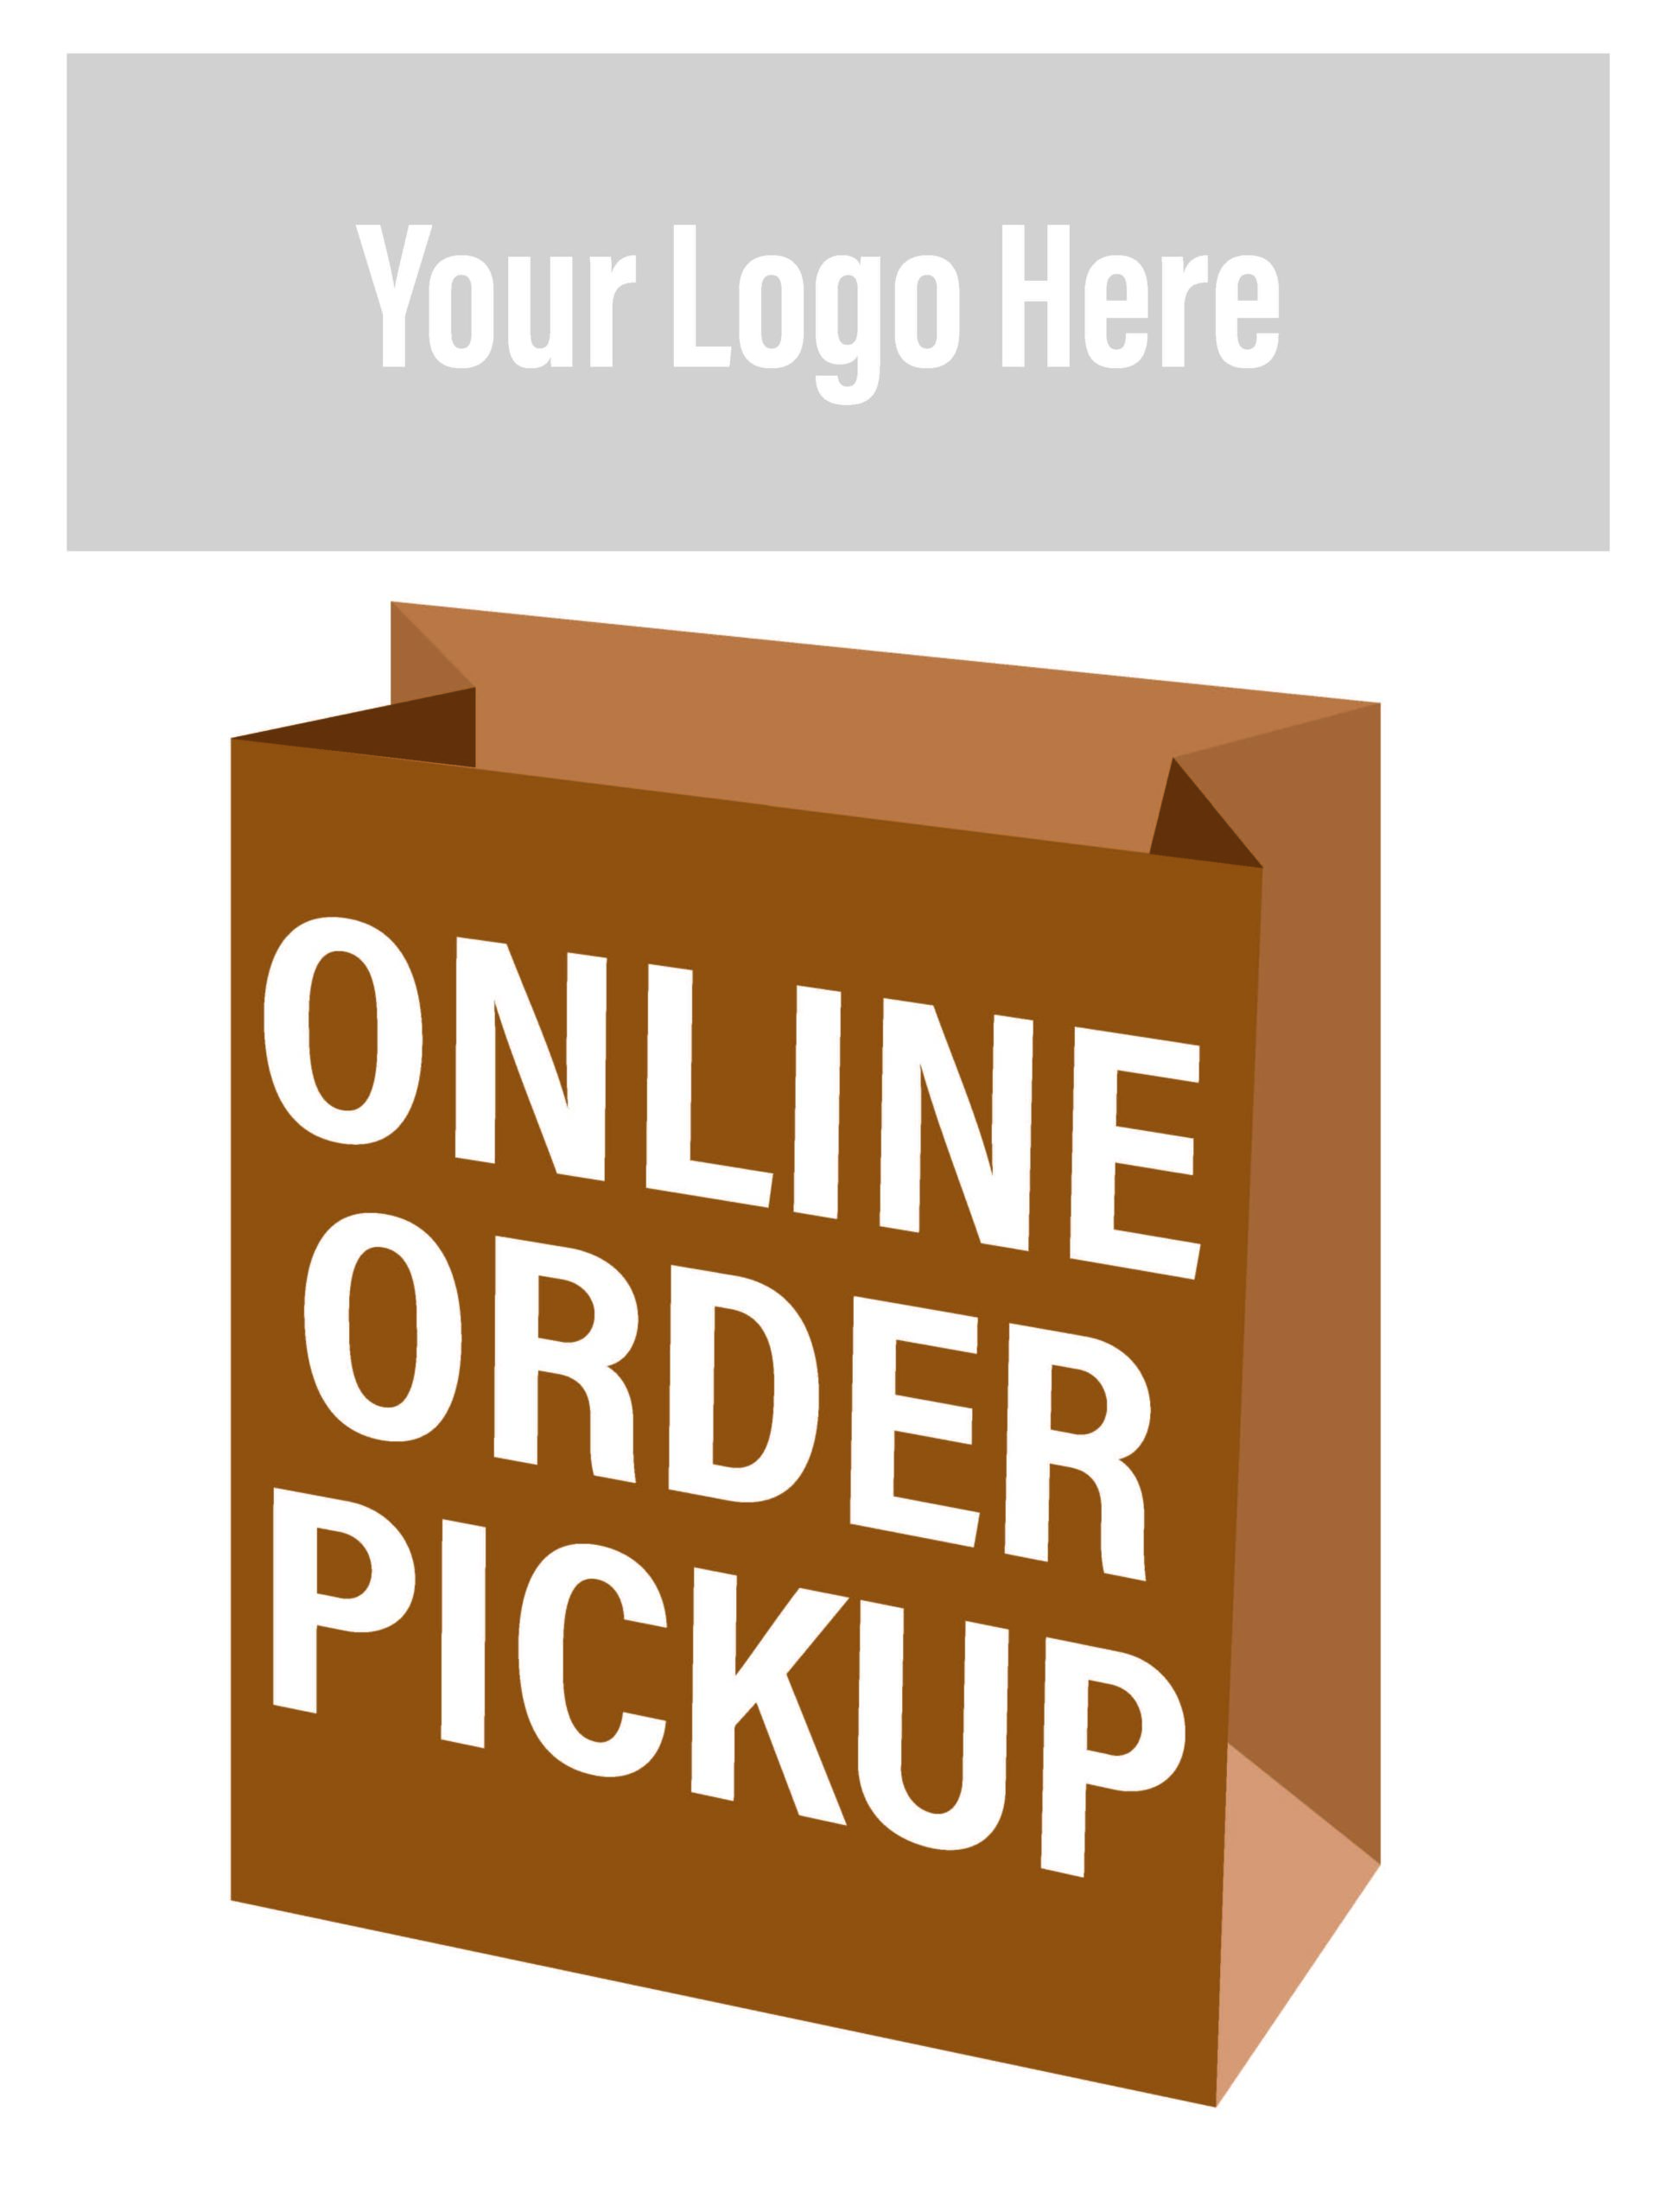 Online Order Pickup - Storefront Sign 30x40"